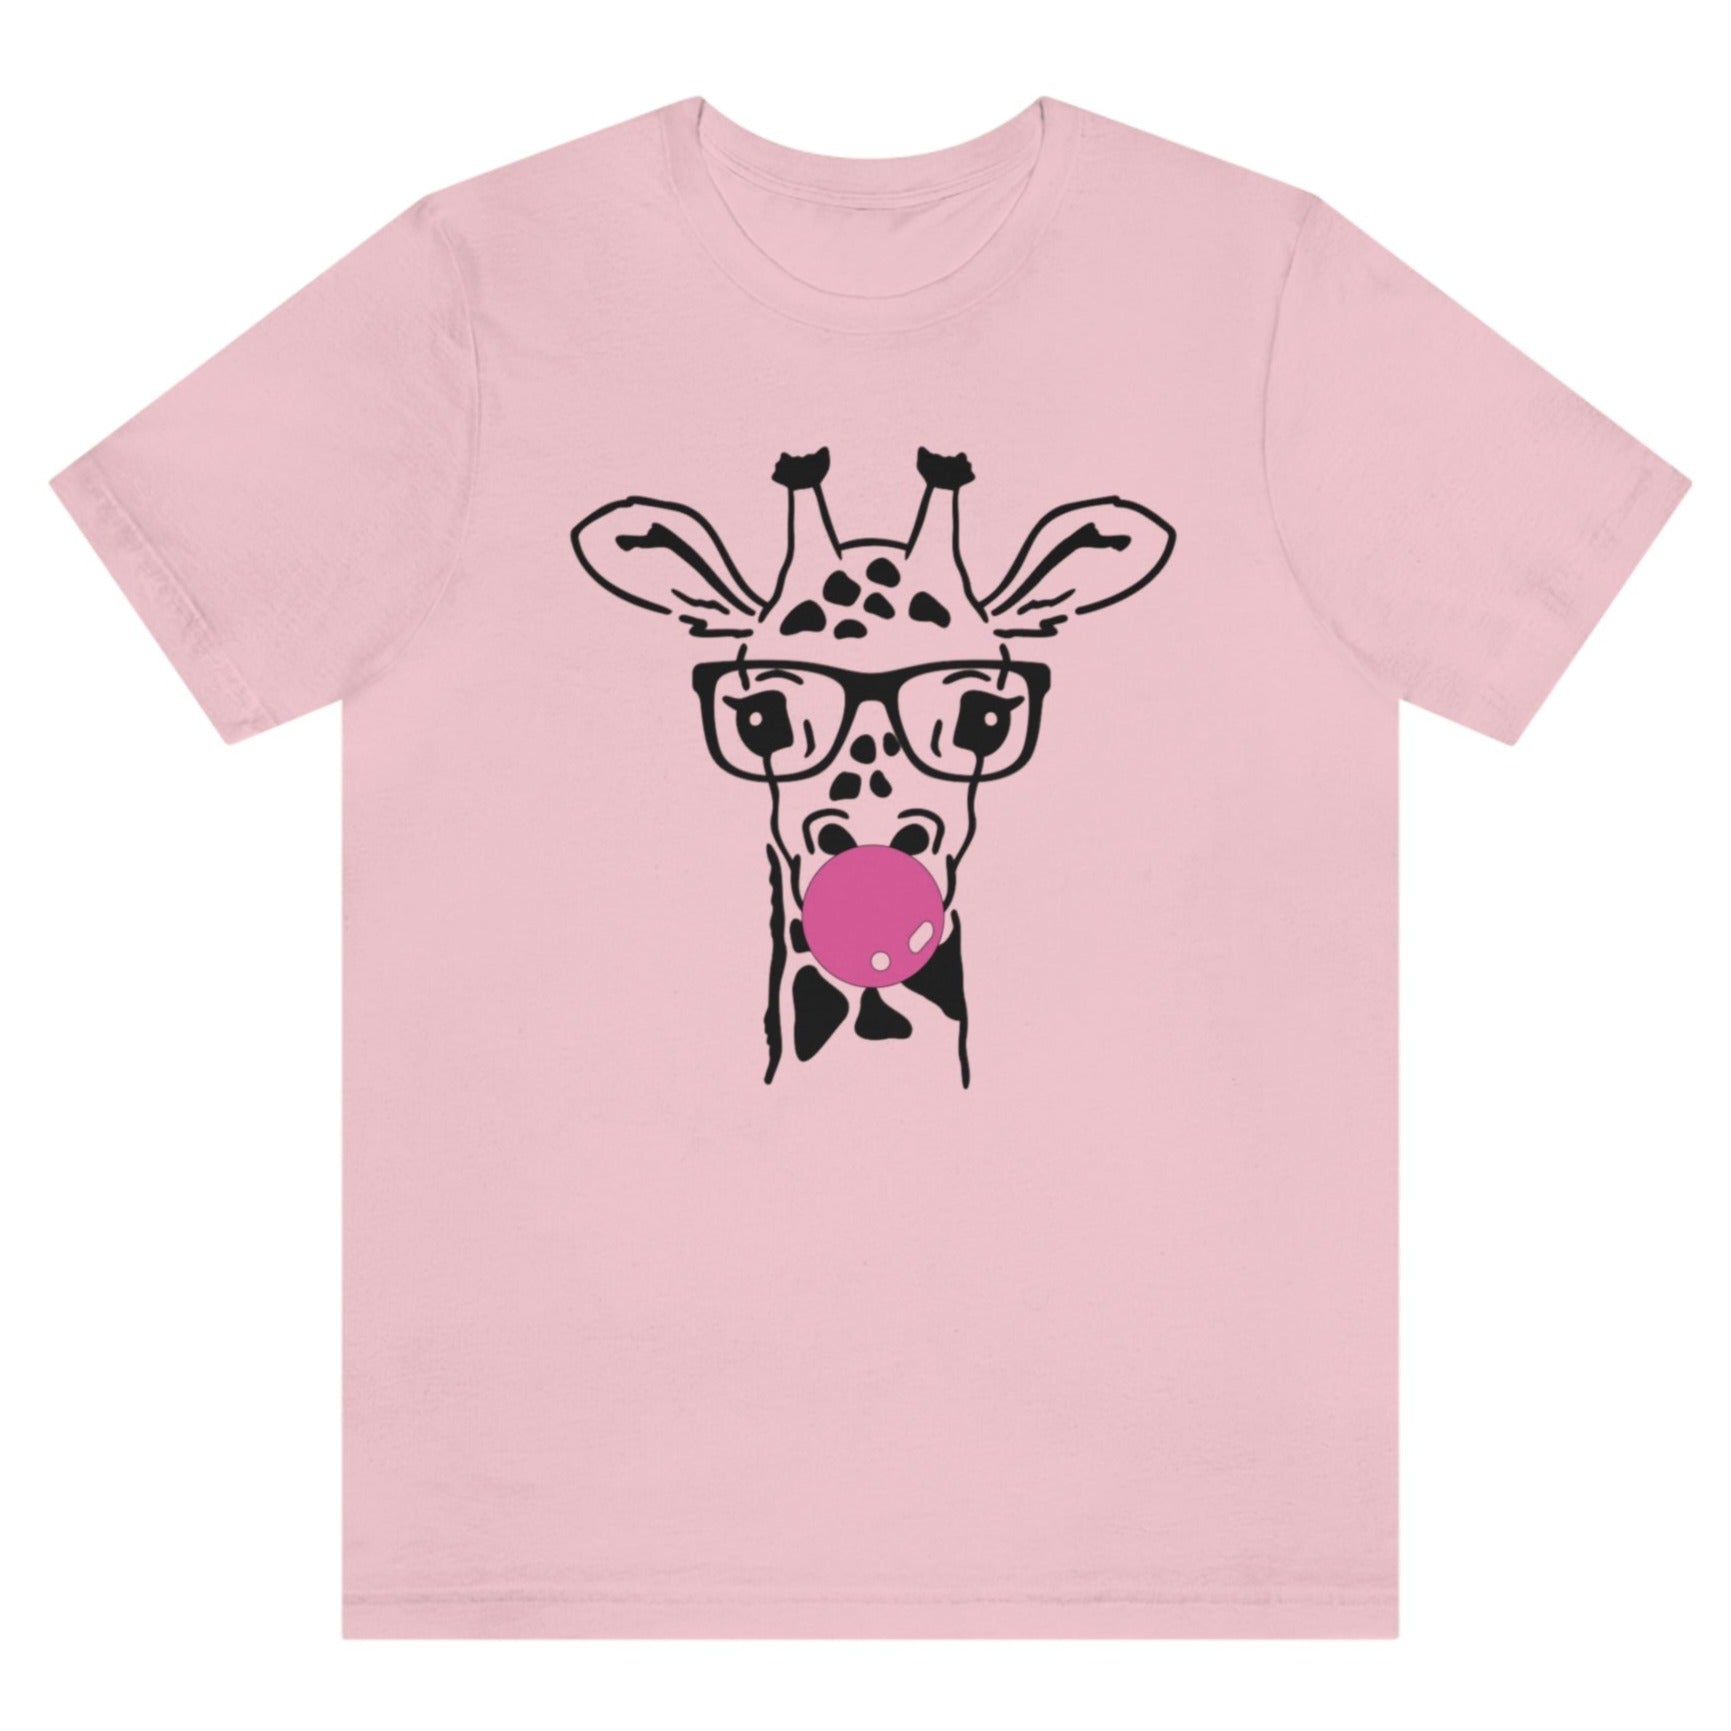 bubblegum-giraffe-pink-t-shirt-womens-style